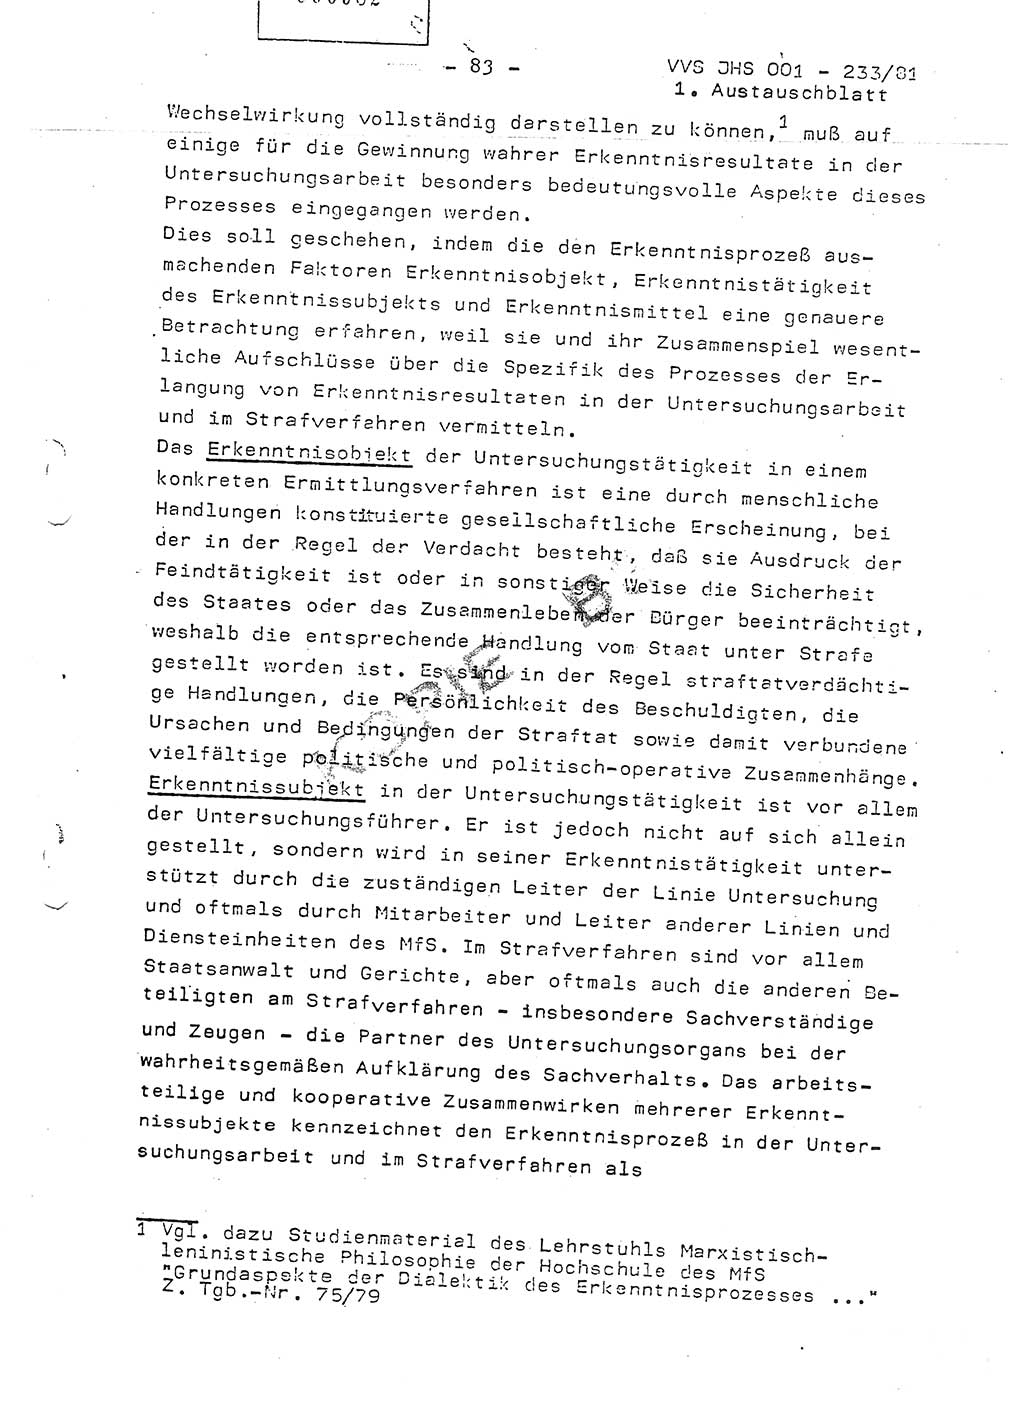 Dissertation Oberstleutnant Horst Zank (JHS), Oberstleutnant Dr. Karl-Heinz Knoblauch (JHS), Oberstleutnant Gustav-Adolf Kowalewski (HA Ⅸ), Oberstleutnant Wolfgang Plötner (HA Ⅸ), Ministerium für Staatssicherheit (MfS) [Deutsche Demokratische Republik (DDR)], Juristische Hochschule (JHS), Vertrauliche Verschlußsache (VVS) o001-233/81, Potsdam 1981, Blatt 83 (Diss. MfS DDR JHS VVS o001-233/81 1981, Bl. 83)